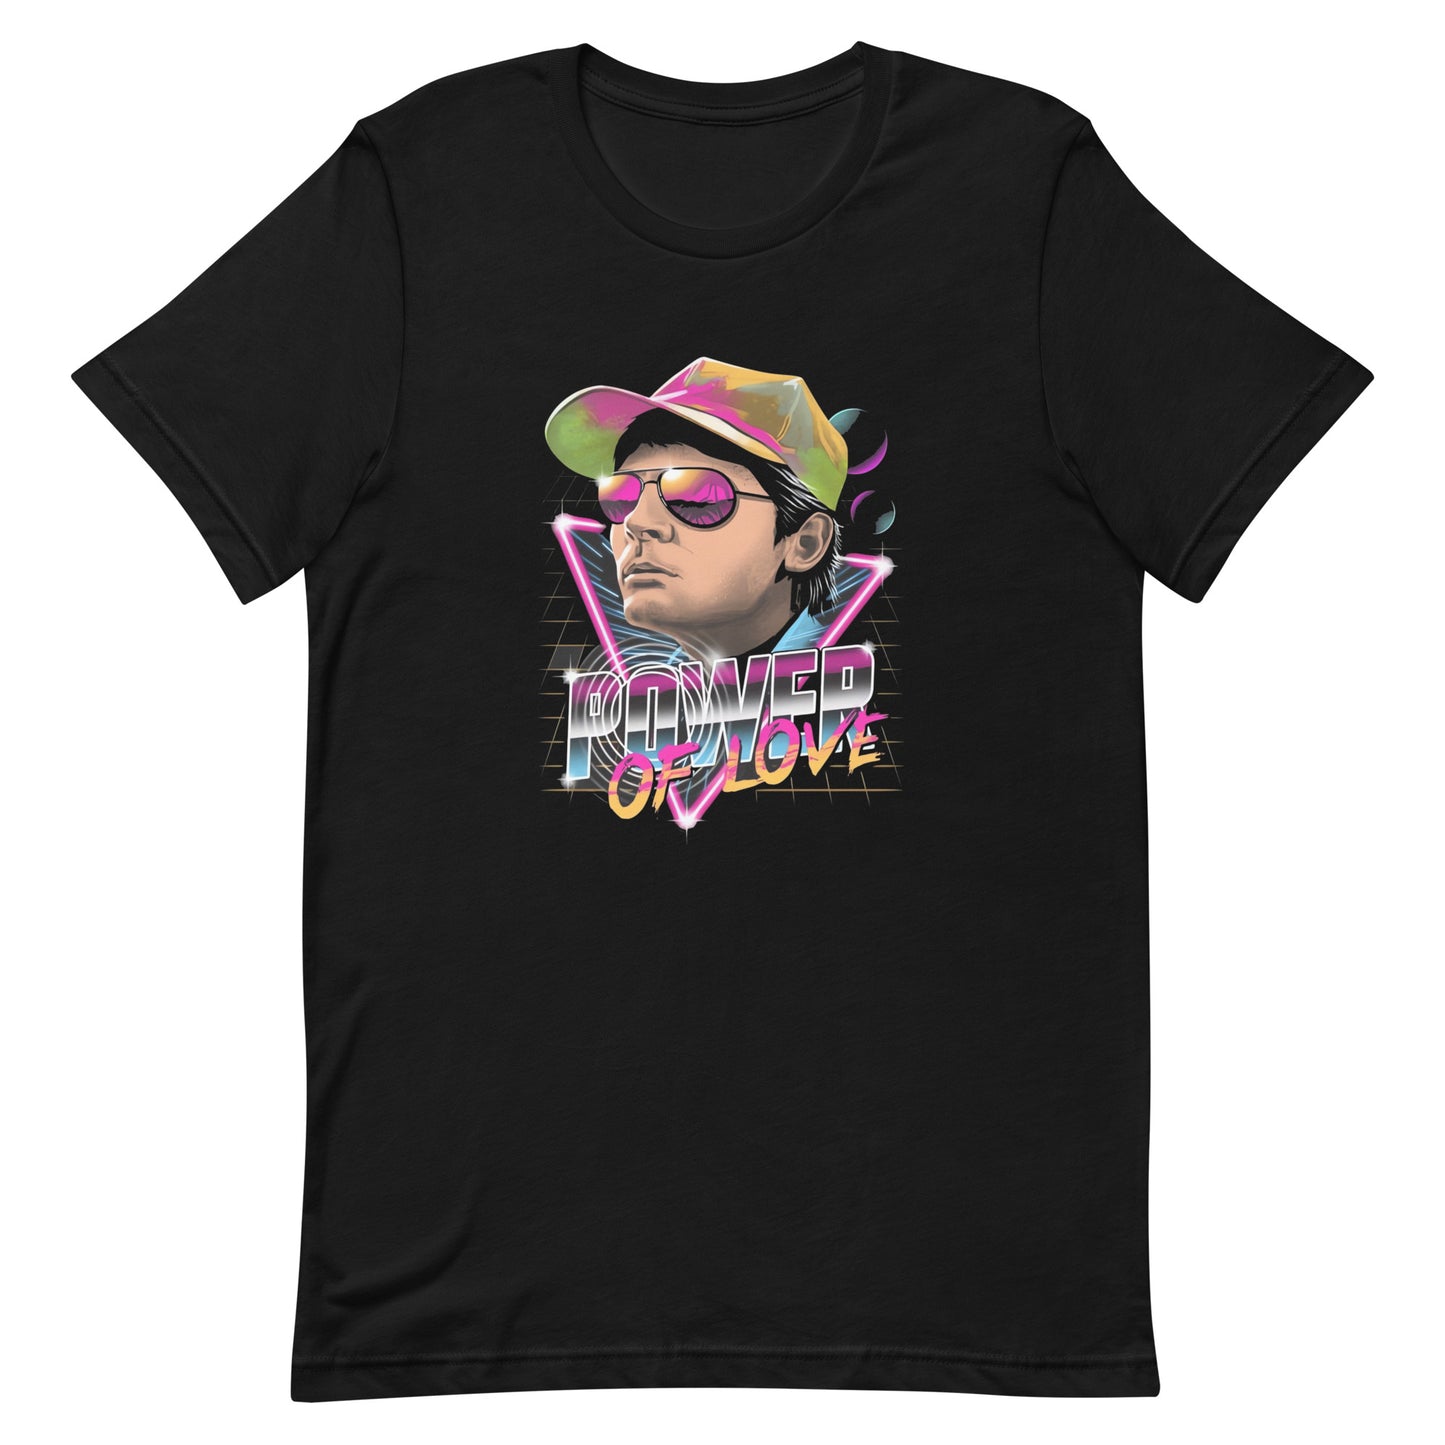 ¡Compra el mejor merchandising en Superstar! Encuentra diseños únicos y de alta calidad en camisetas únicas, Camiseta Power Of Love